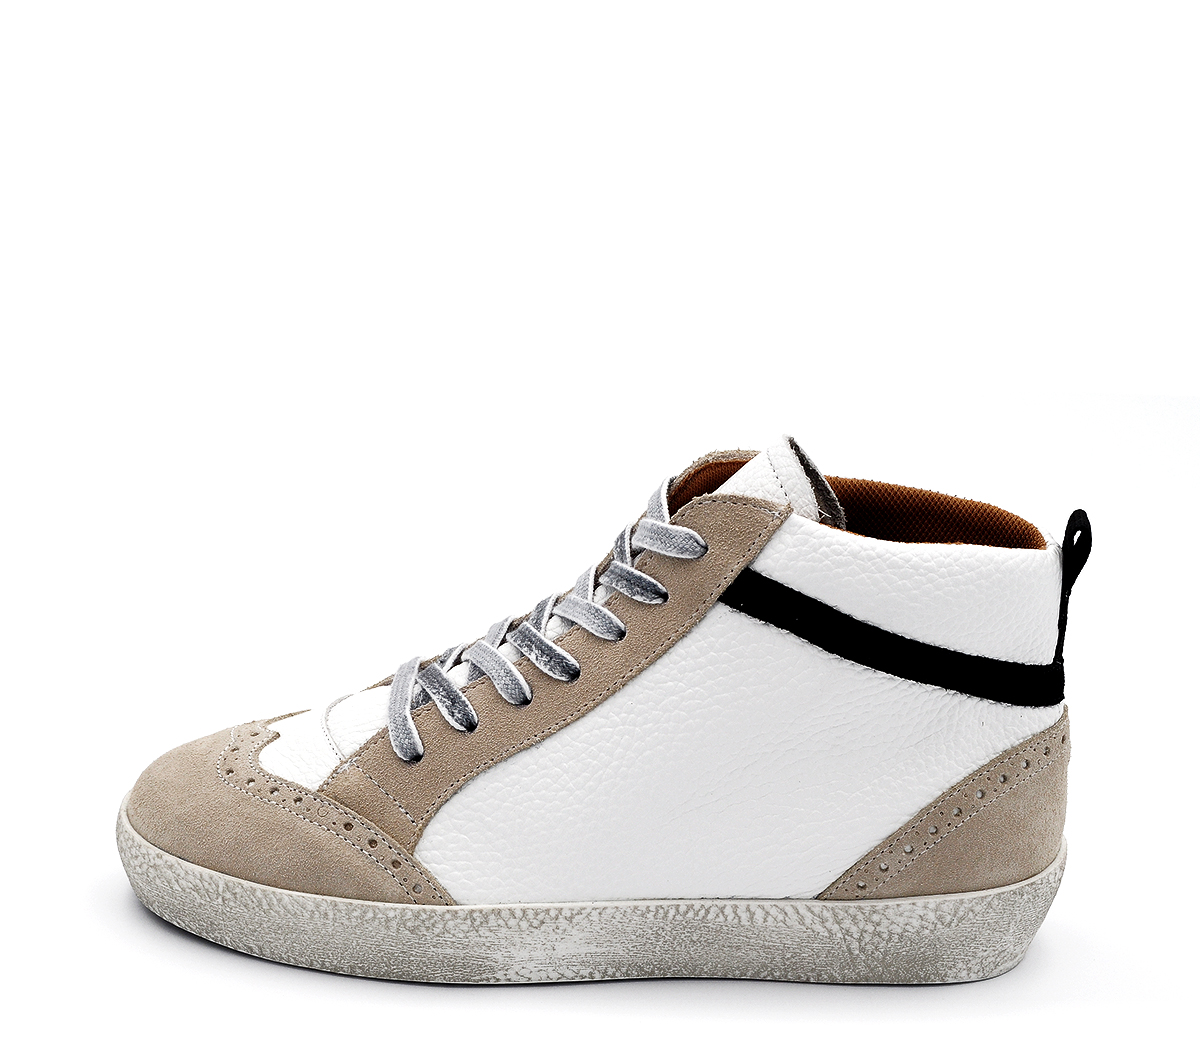 Ref. 6163 Sneaker piel blanca combinada con serraje beige y detalle trasero en negro. Plataforma de 2.5 cm. Plantilla anatomica con cuña de 2 cm.